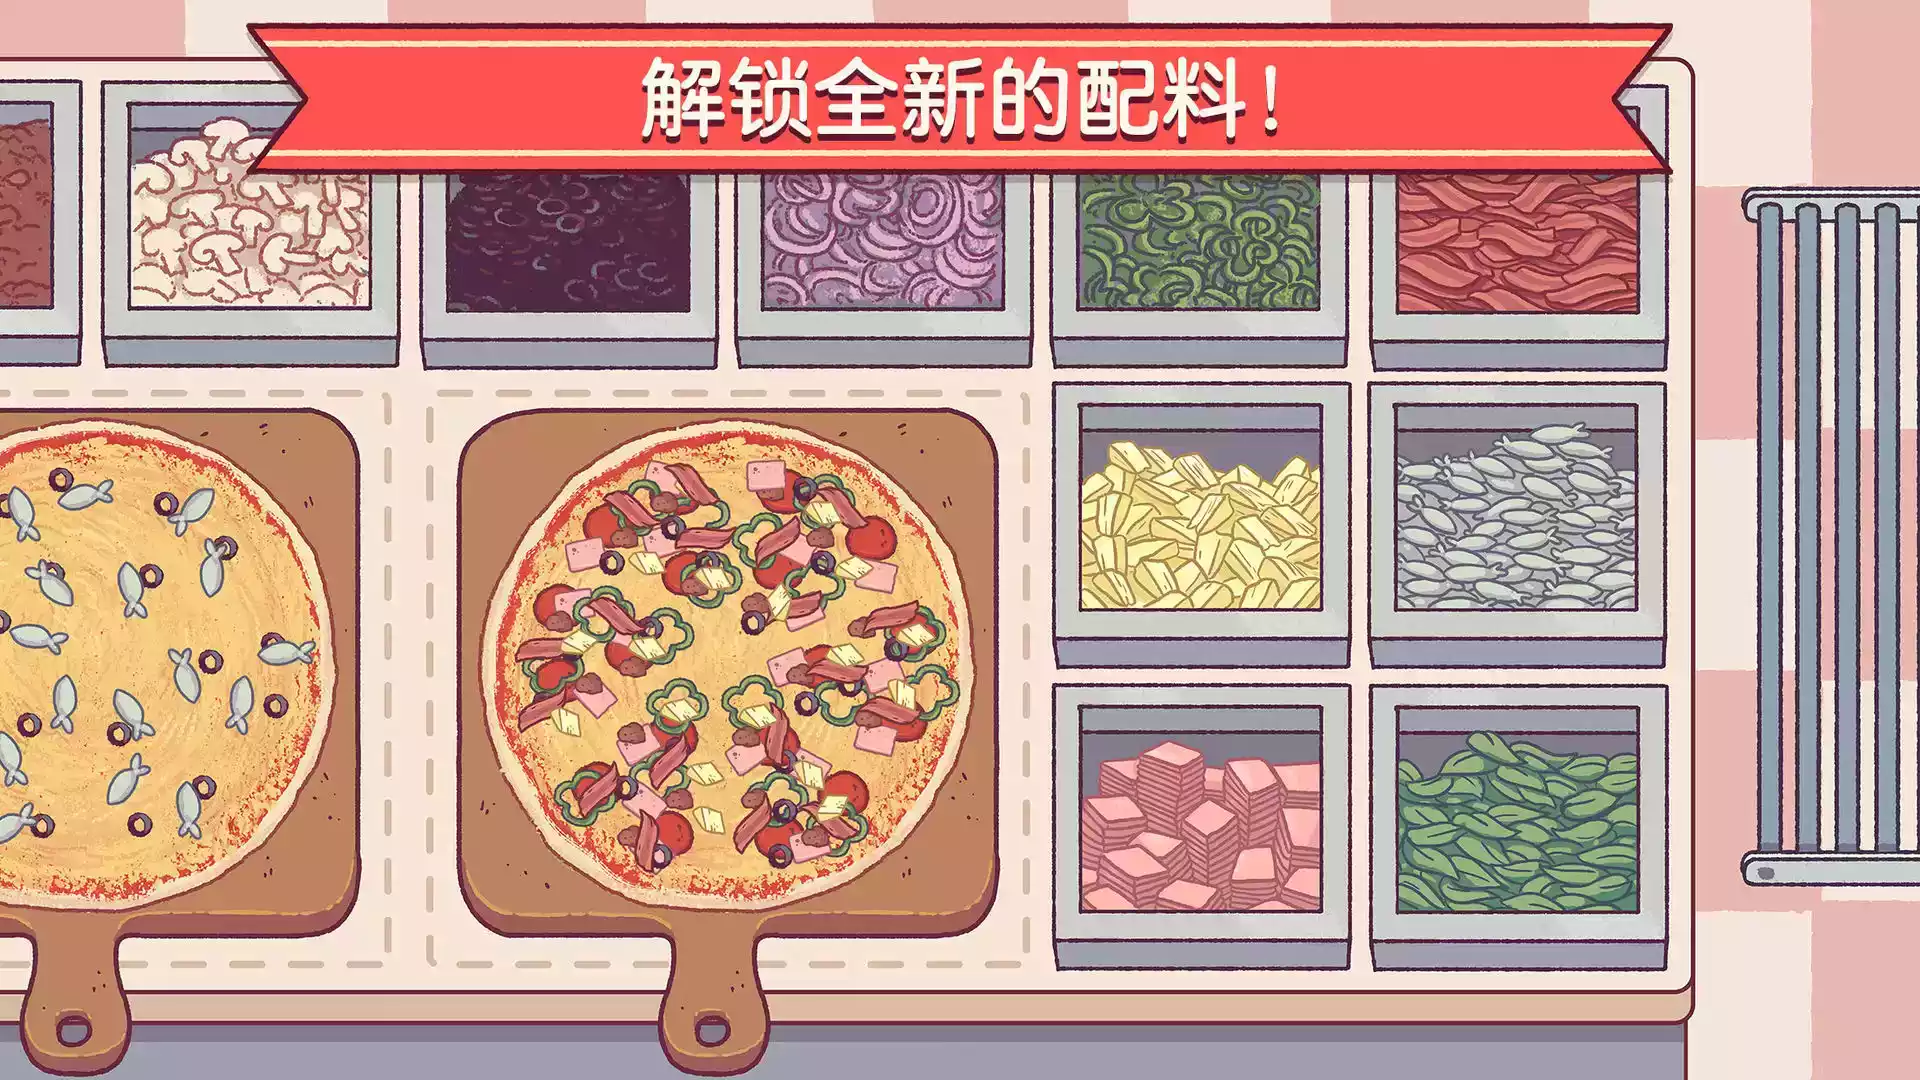 可口的披萨官方正版游戏链接 截图